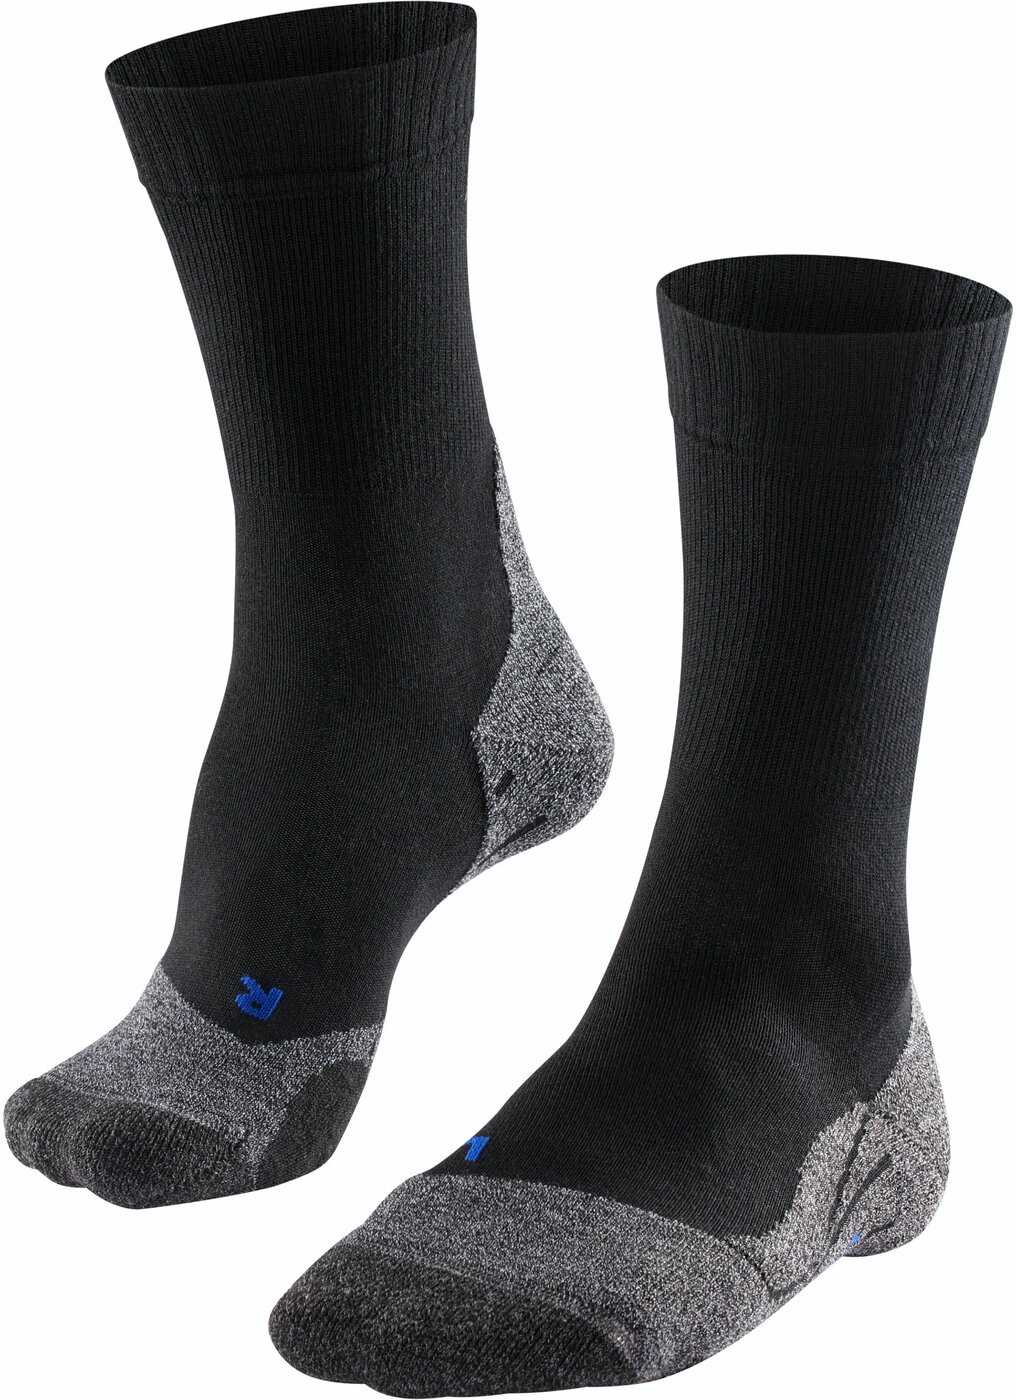 TK2 Explore Cool Herren Trekking Socken